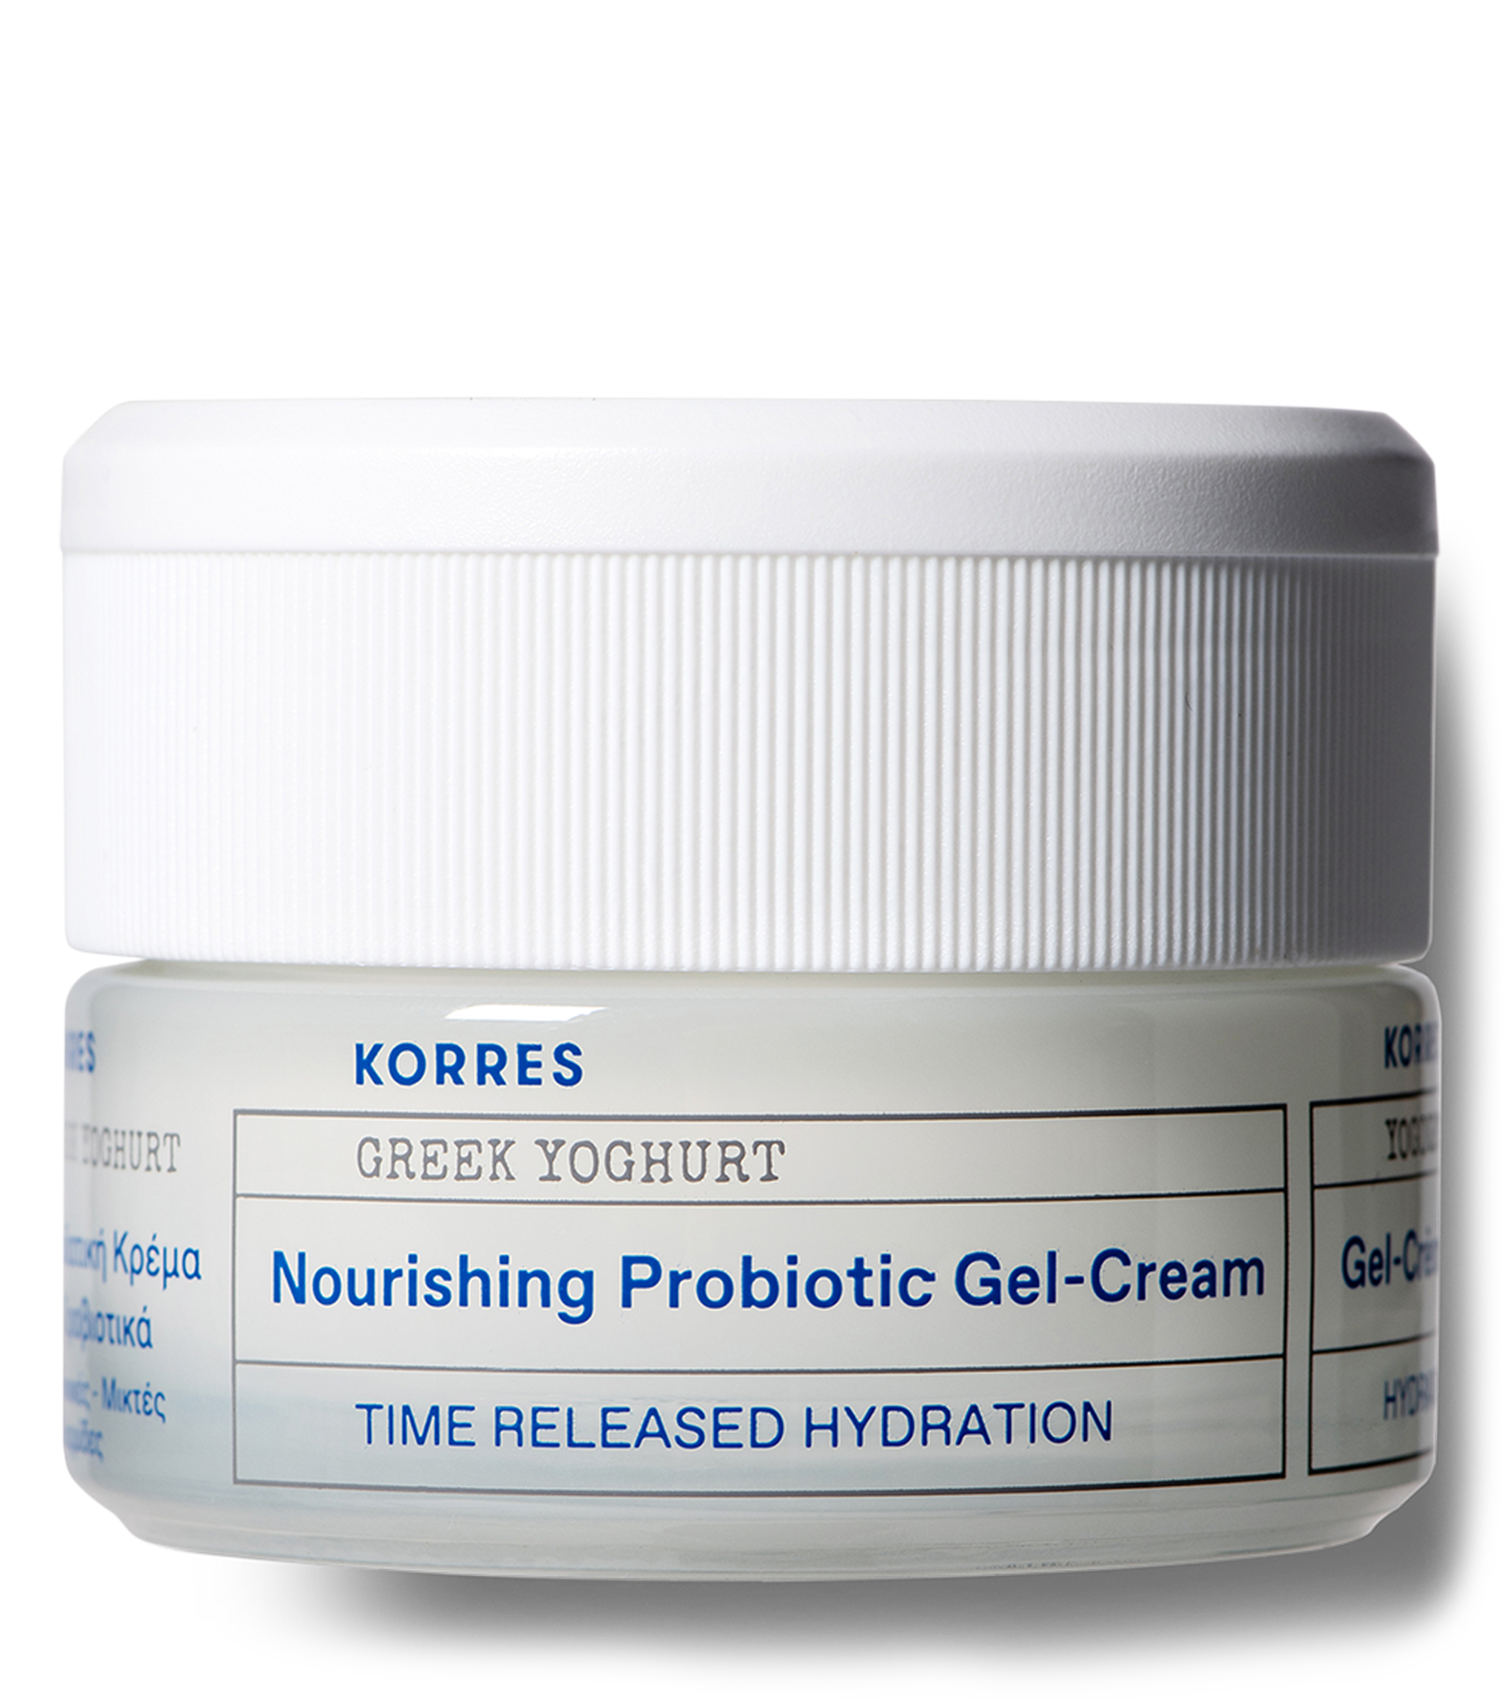 Greek Yoghurt Nourishing Probiotic Gel-Cream Greek Yoghurt Nourishing Probiotic Gel-Cream - Full Size Sample 1